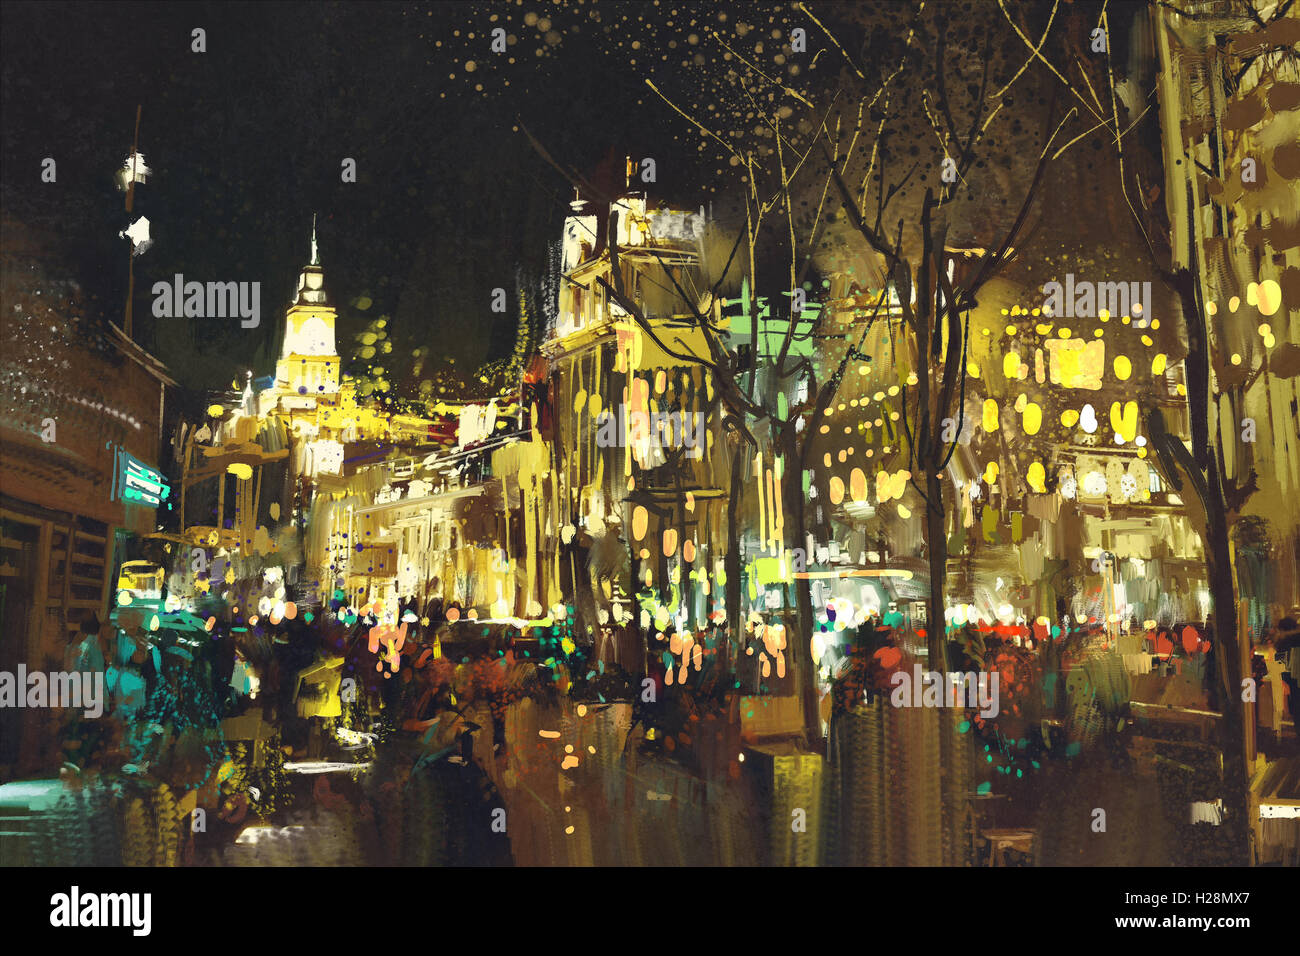 L'art abstrait de rue de ville avec la lumière colorée,illustration peinture Banque D'Images